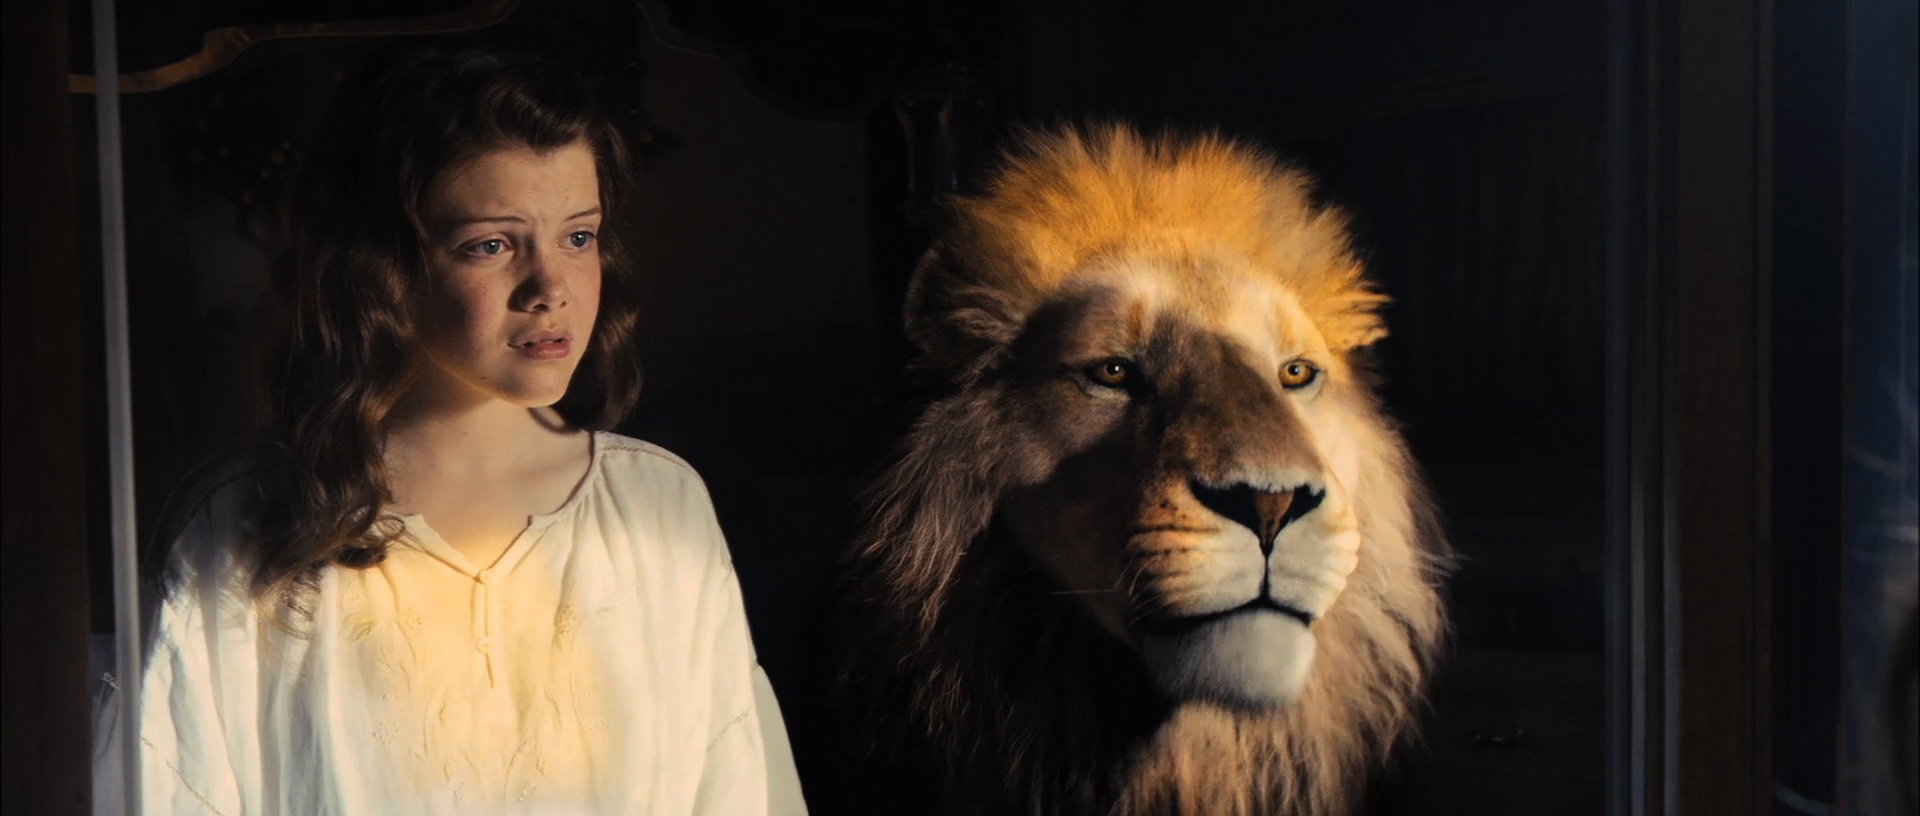 Lucy and Aslan - NarniaWeb